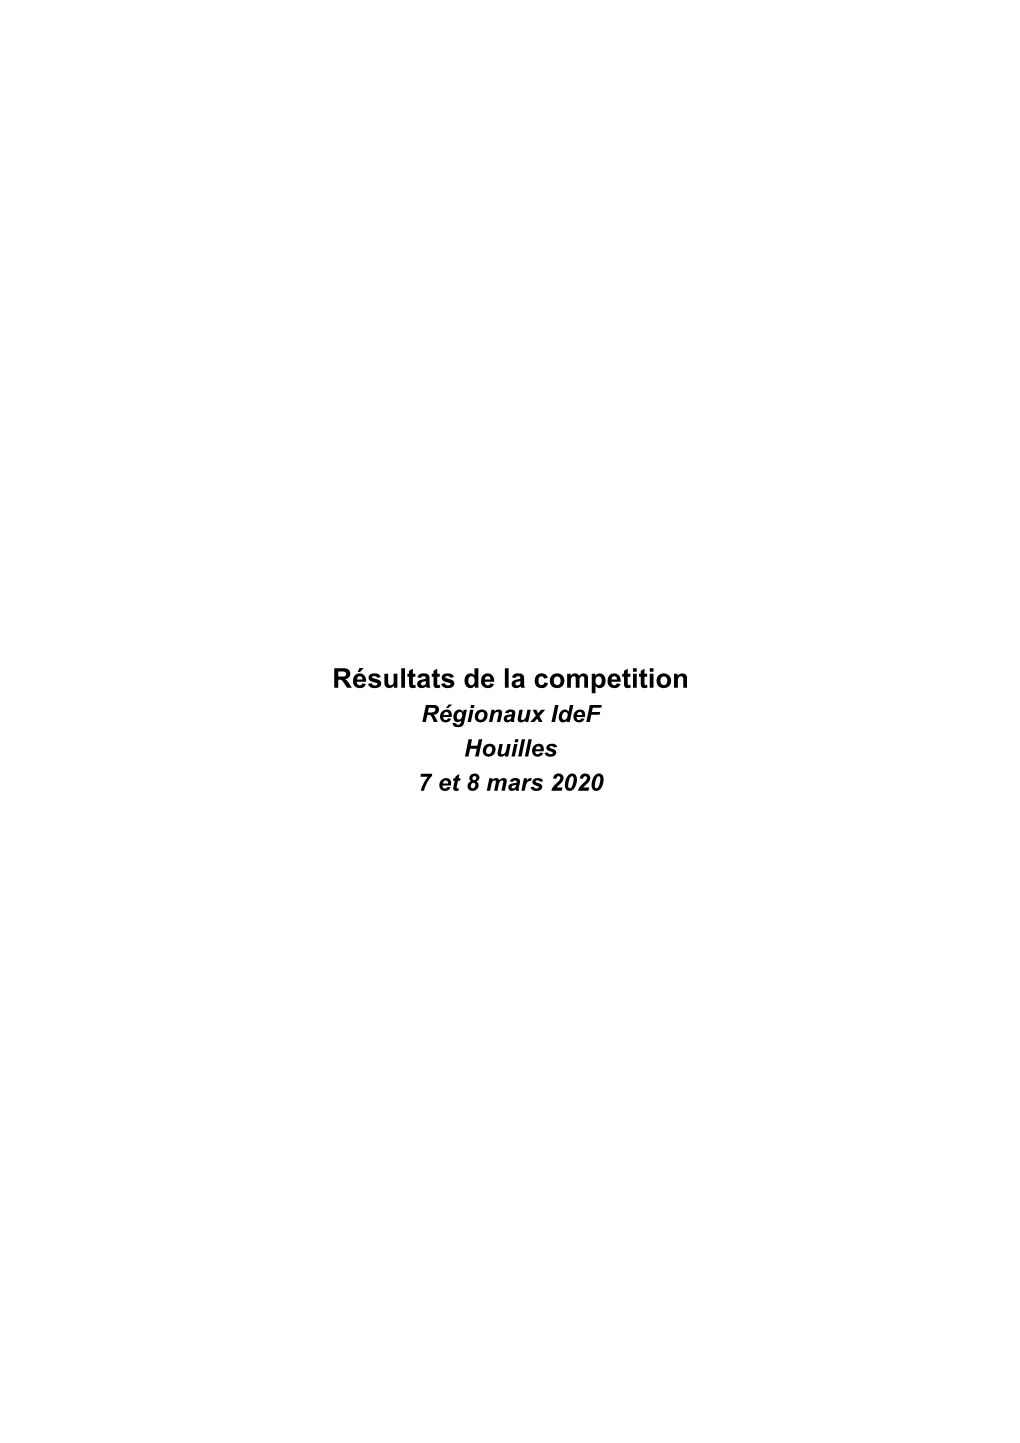 Résultats De La Competition Régionaux Idef Houilles 7 Et 8 Mars 2020 1